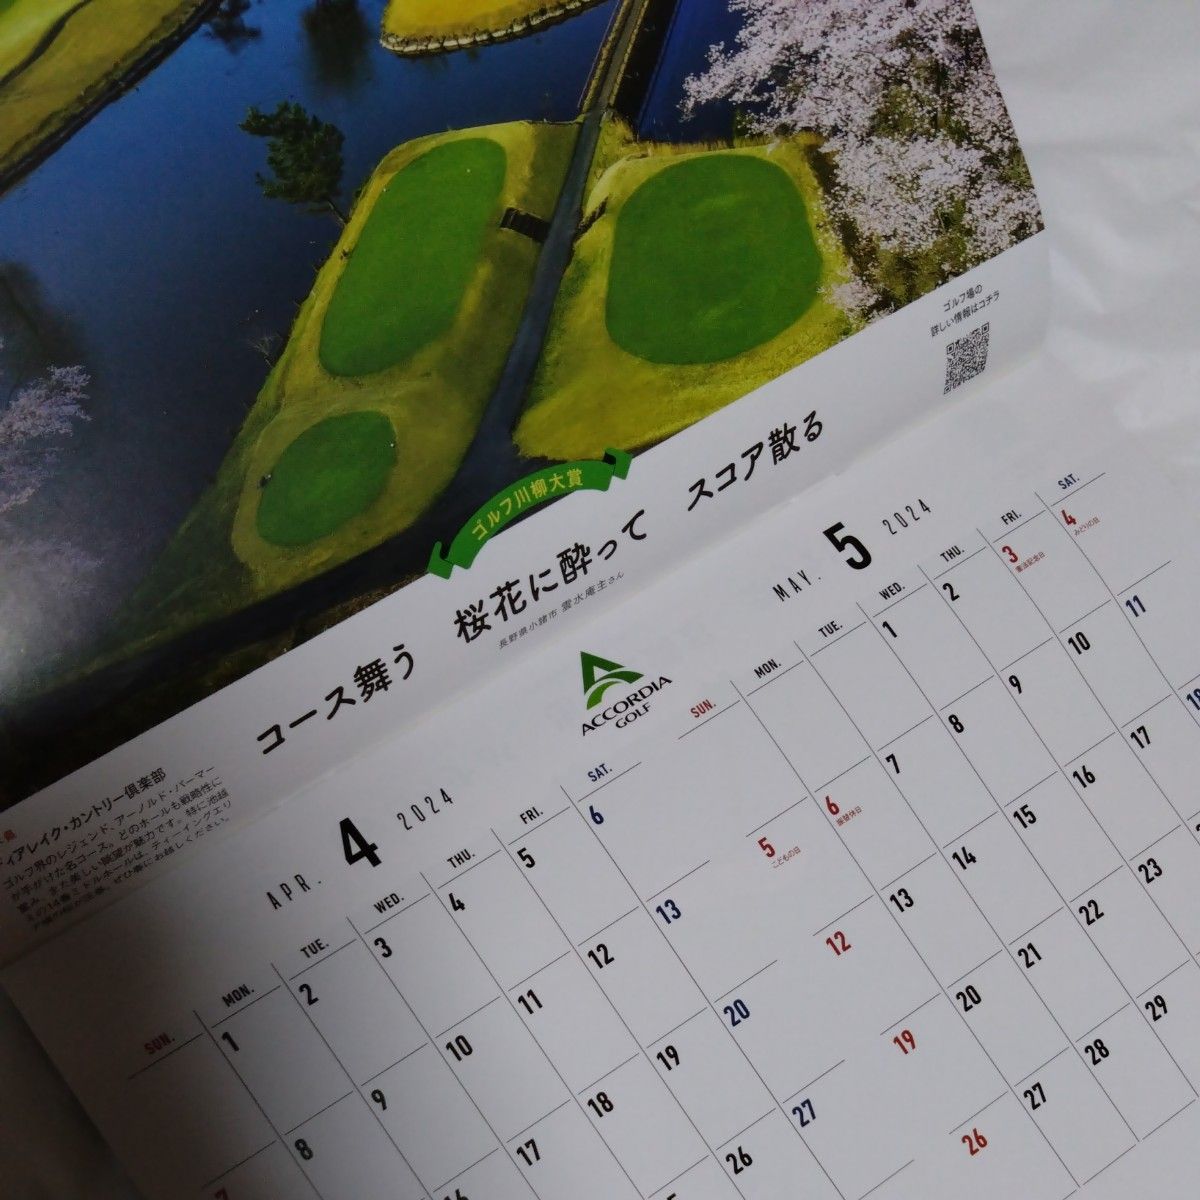 壁掛けカレンダー　ゴルフレッスン　爪のセルフケアについて